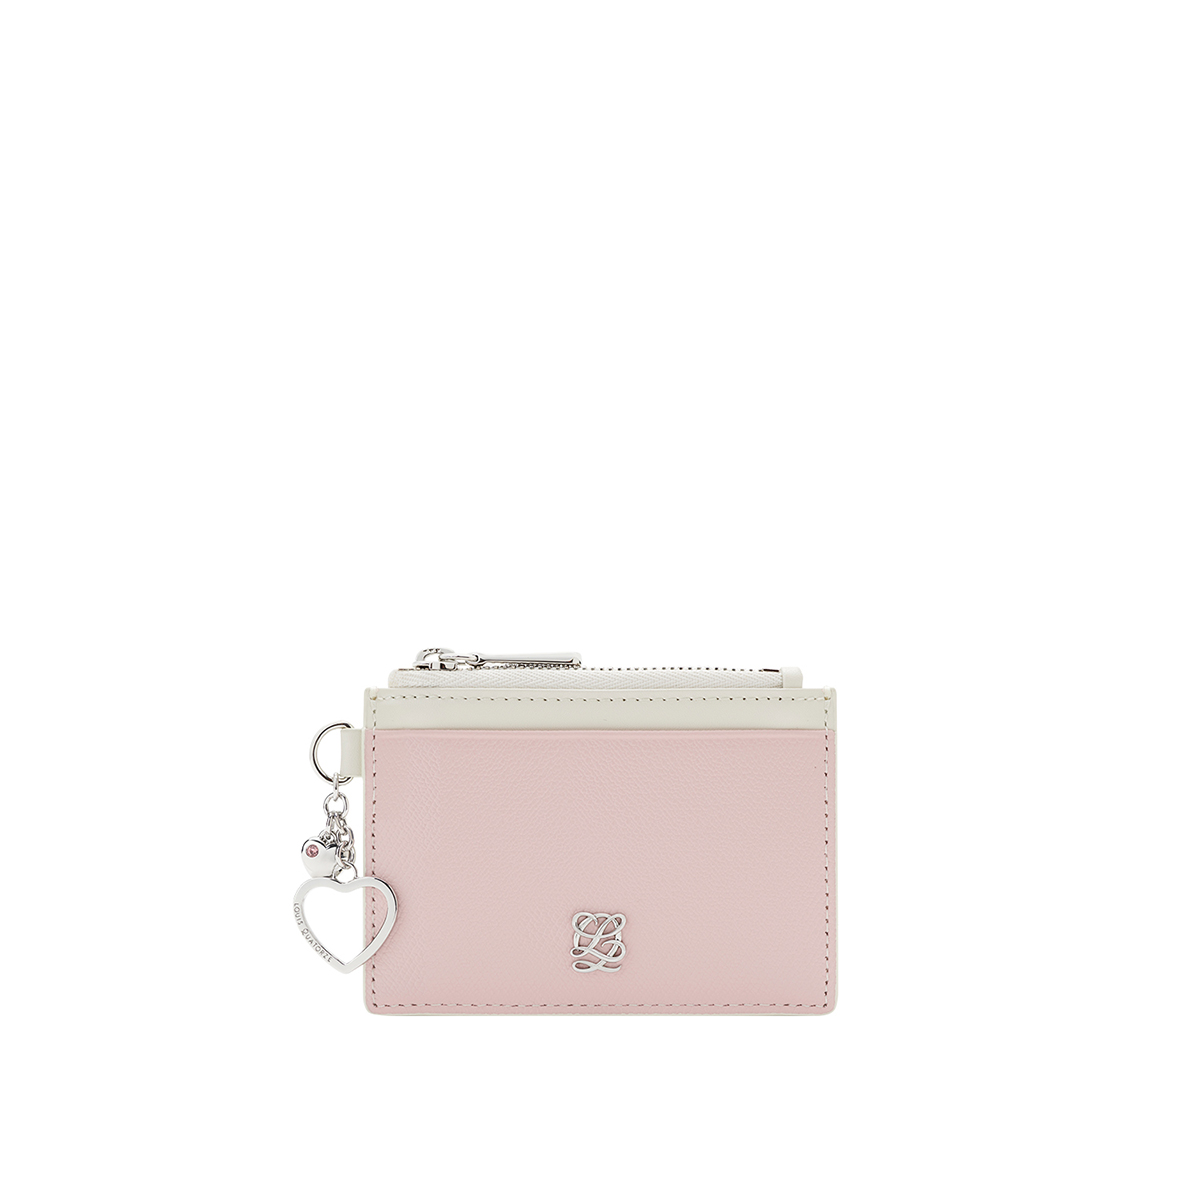 [공식몰단독] 루이까또즈 LALA(라라) 여성카드지갑 핑크 SS2SD73PI